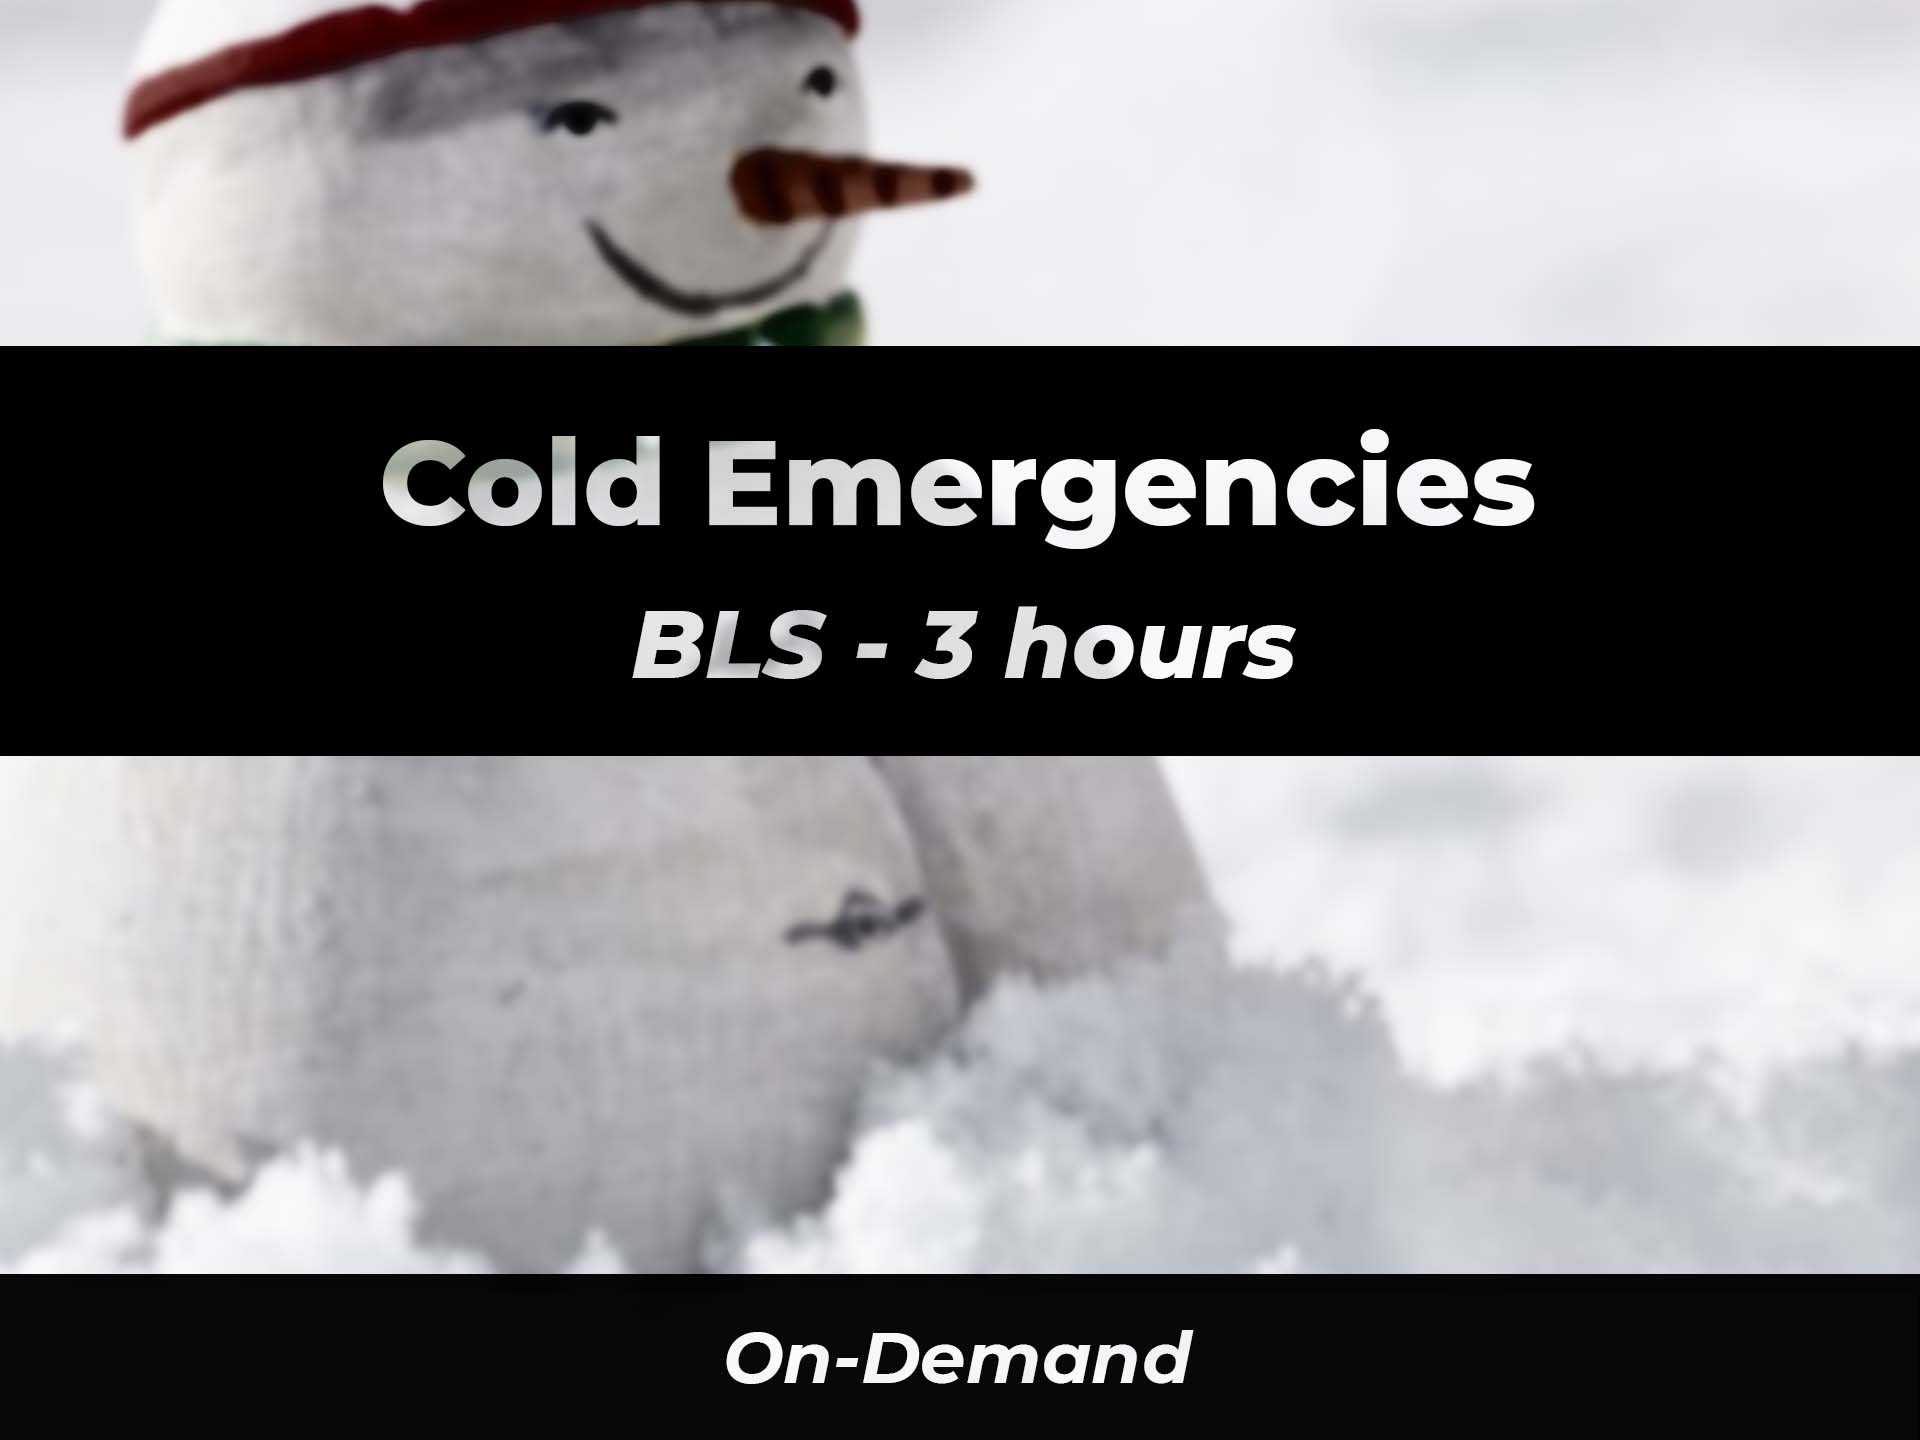 BLS Cold Emergencies 911 eLearning Solutions, LLC